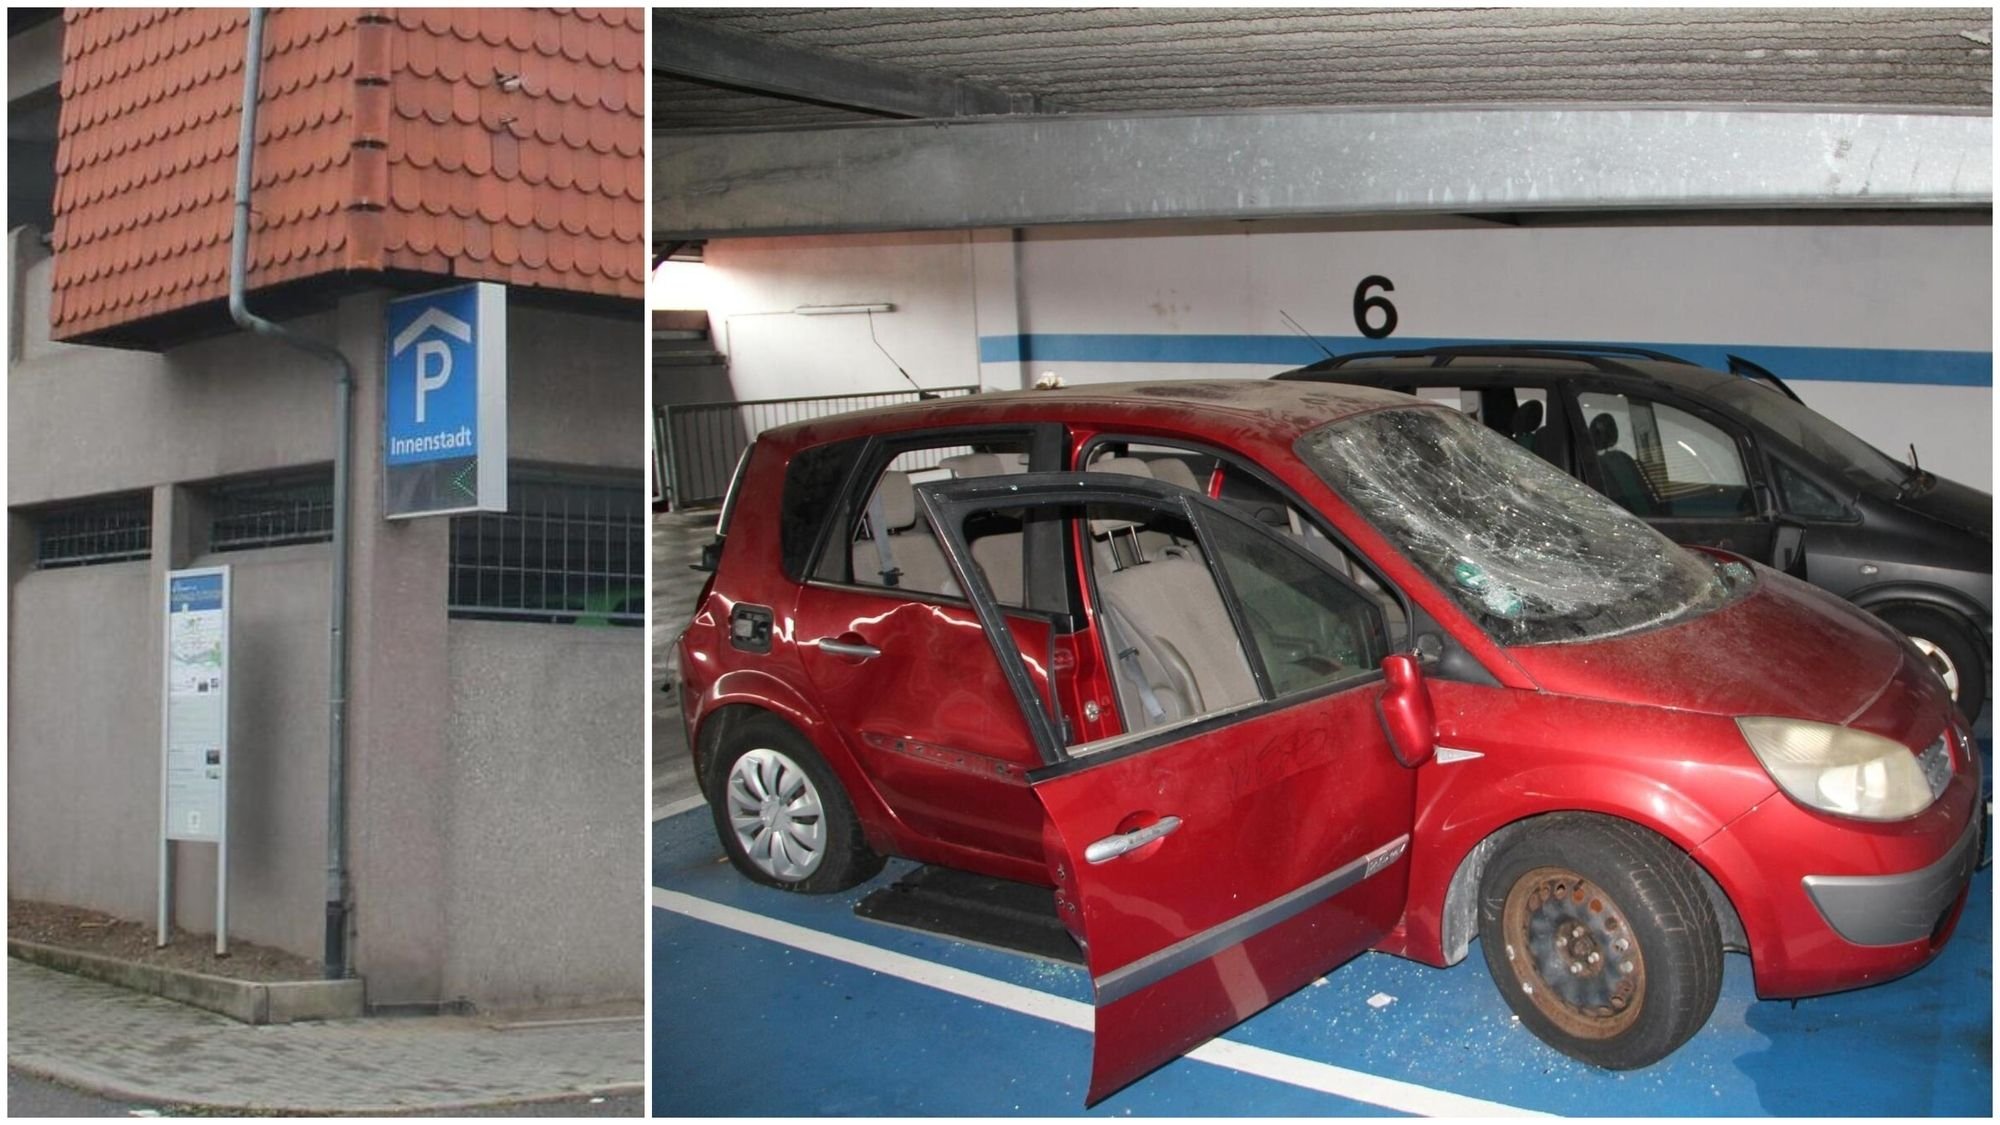 File:Wittinger Straße, Celle, Ausfahrt-Spiegel ohne parkende Autos